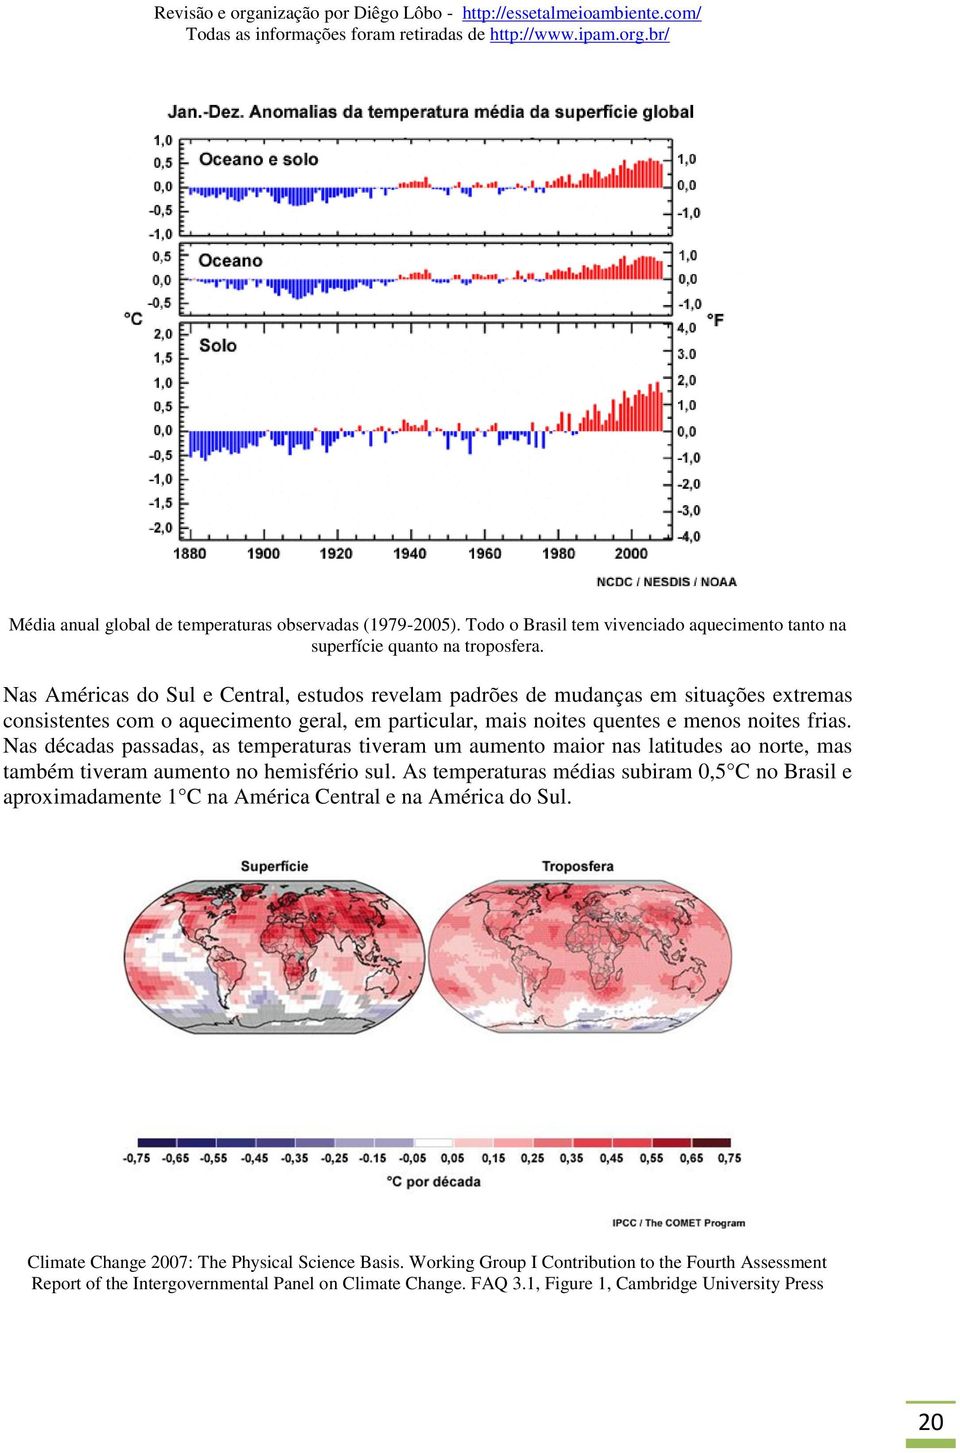 Nas décadas passadas, as temperaturas tiveram um aumento maior nas latitudes ao norte, mas também tiveram aumento no hemisfério sul.